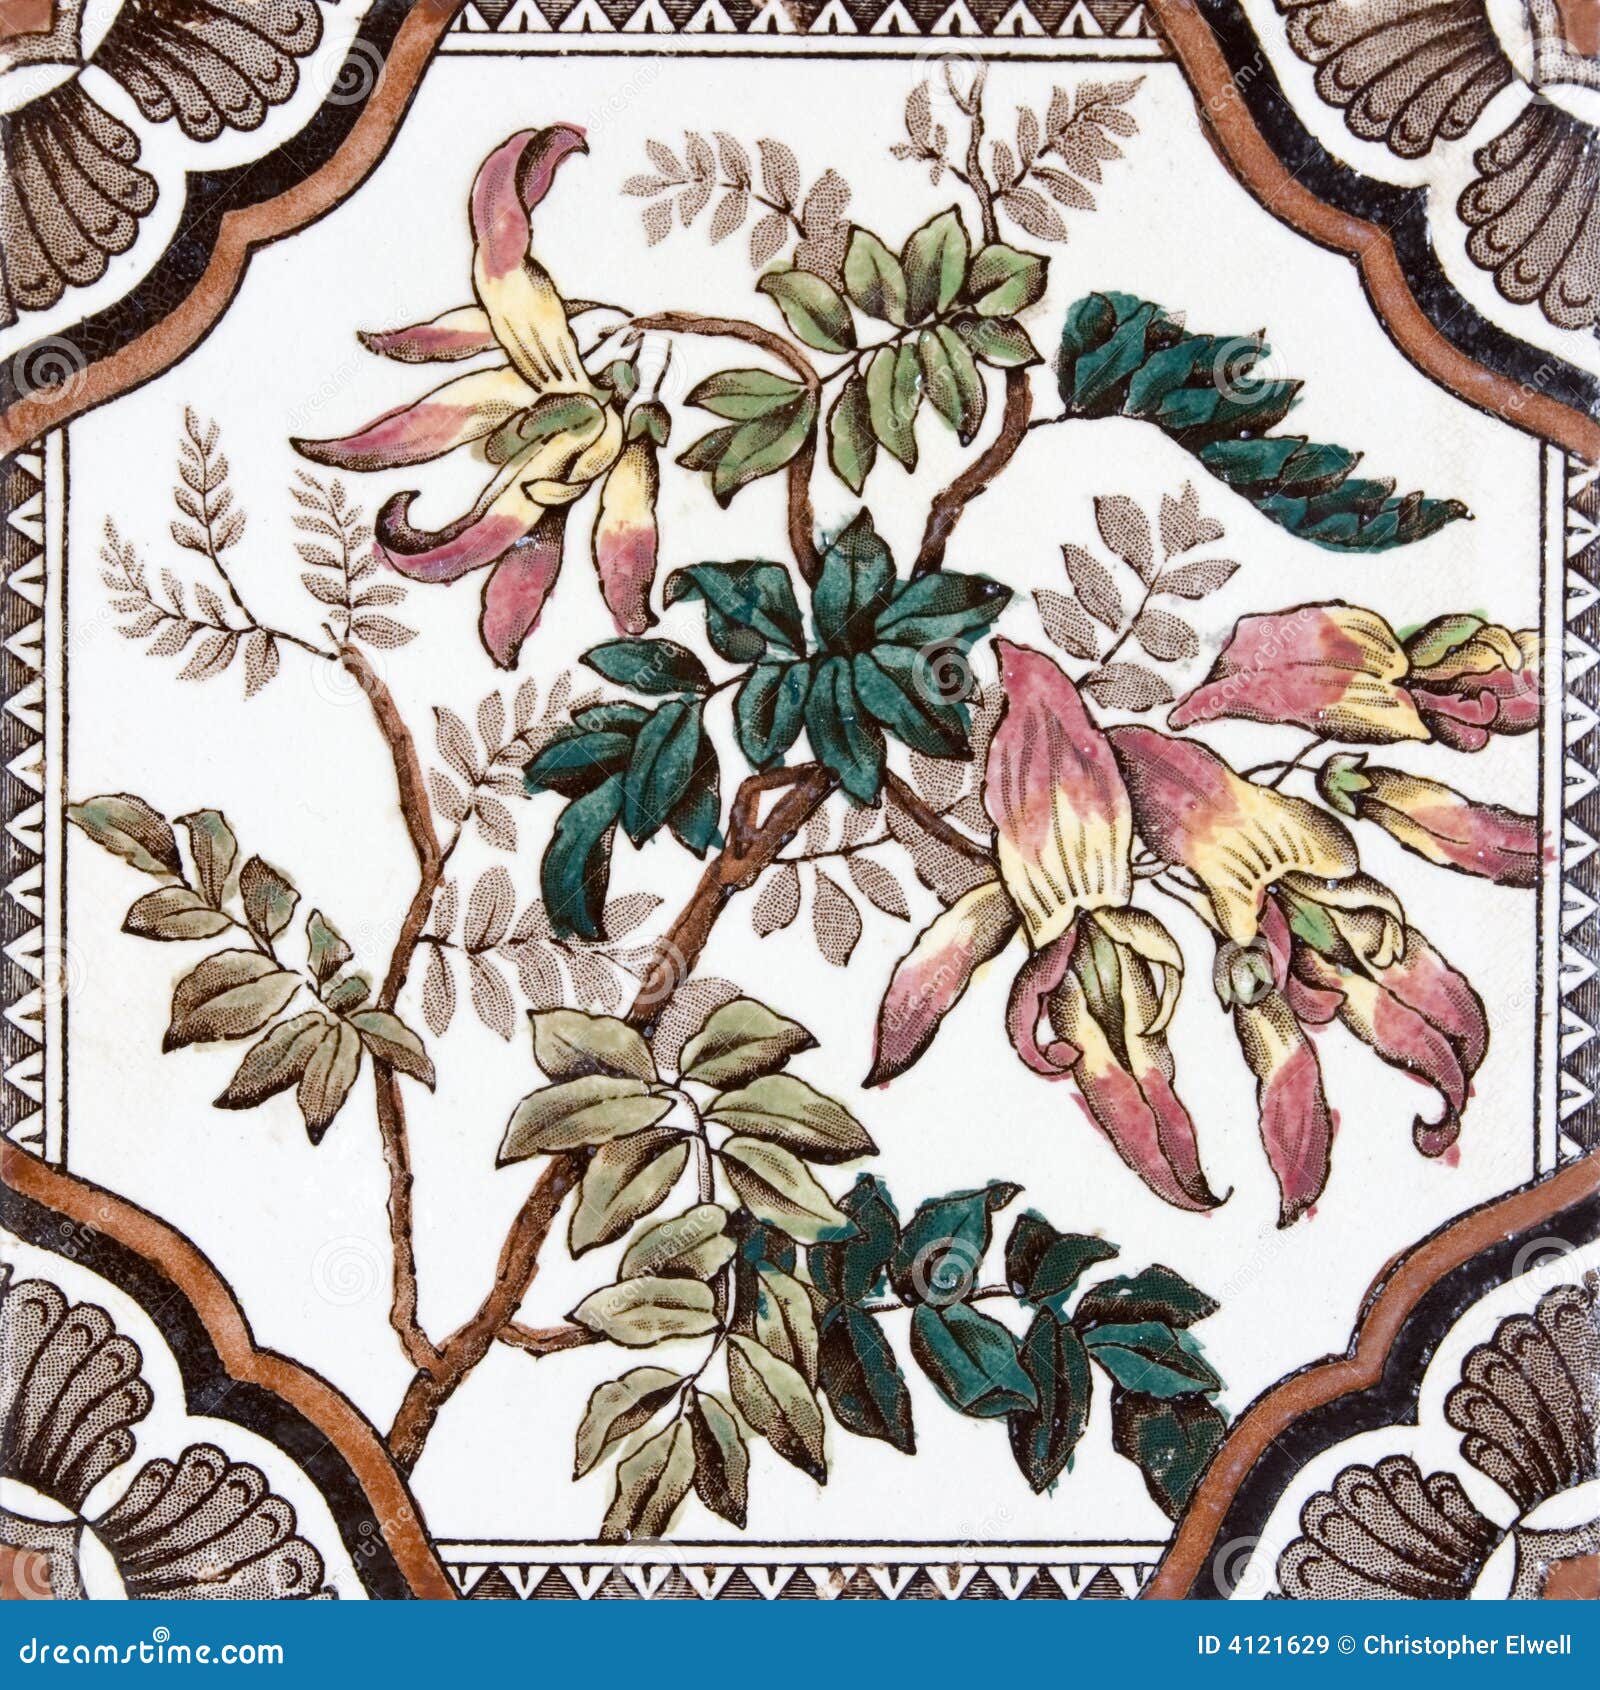 Beautiful Antique Victorian Floral tile   21/61A 